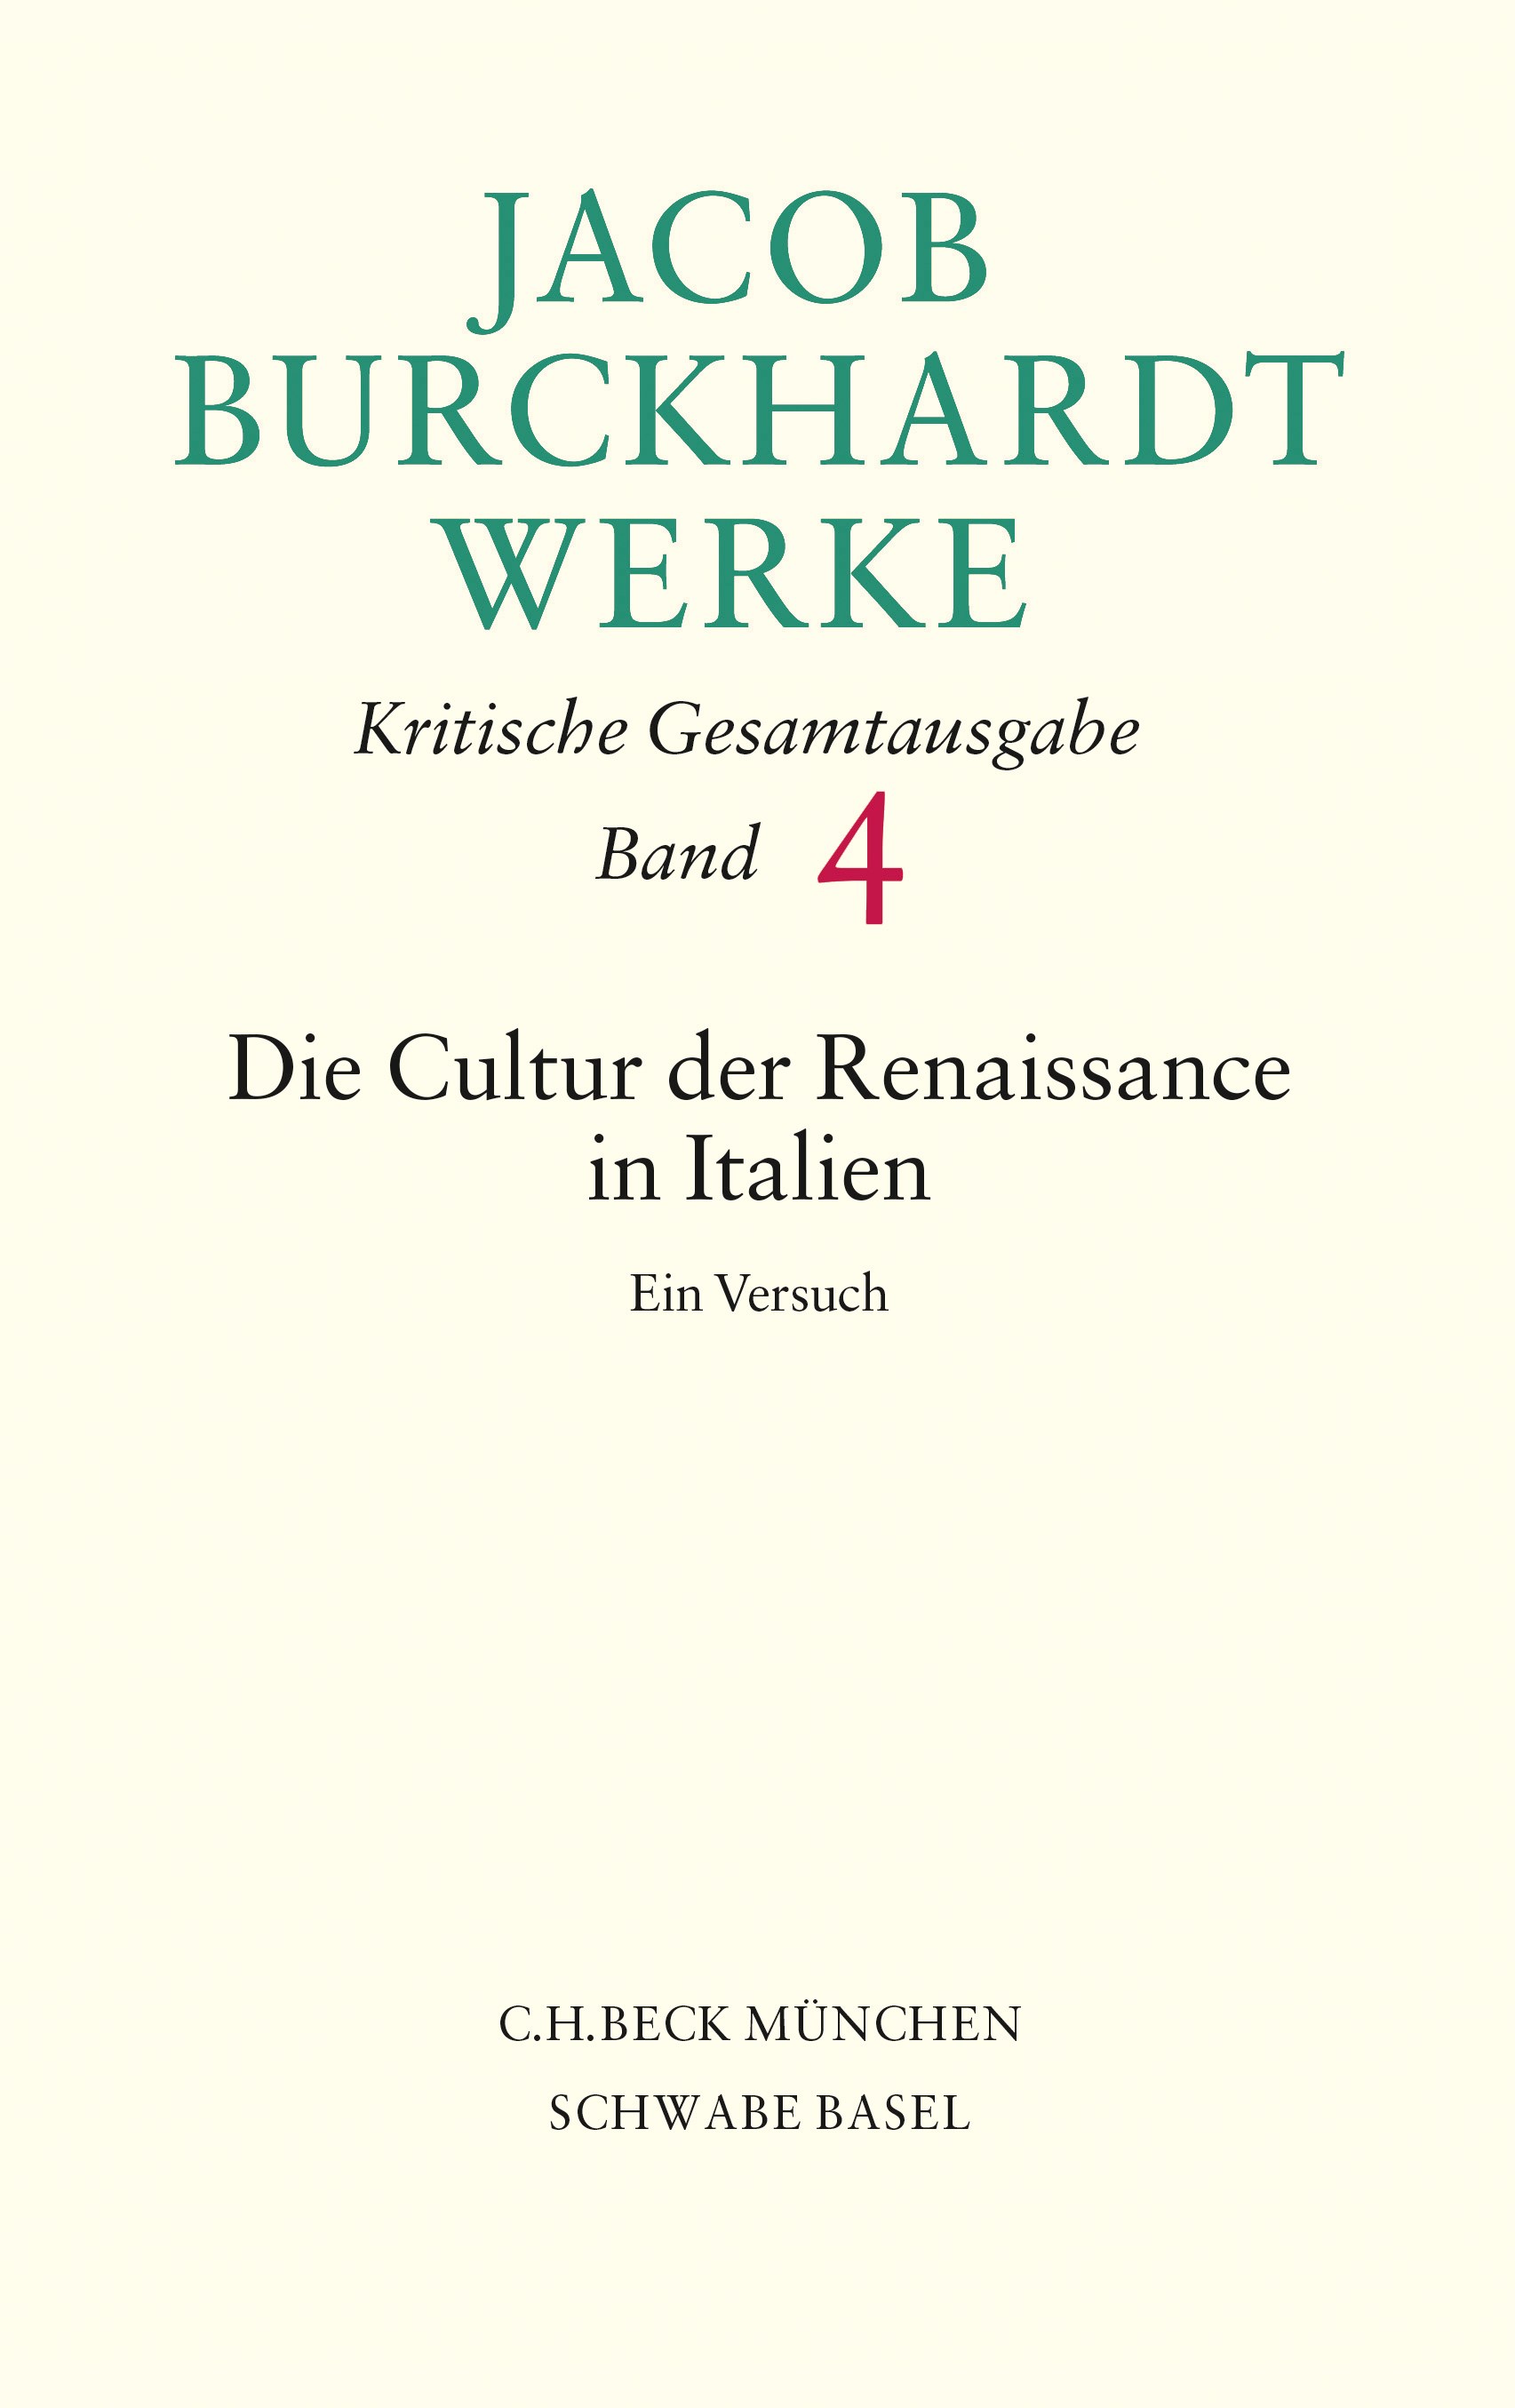 Cover: Burckhardt, Jacob, Die Cultur der Renaissance in Italien